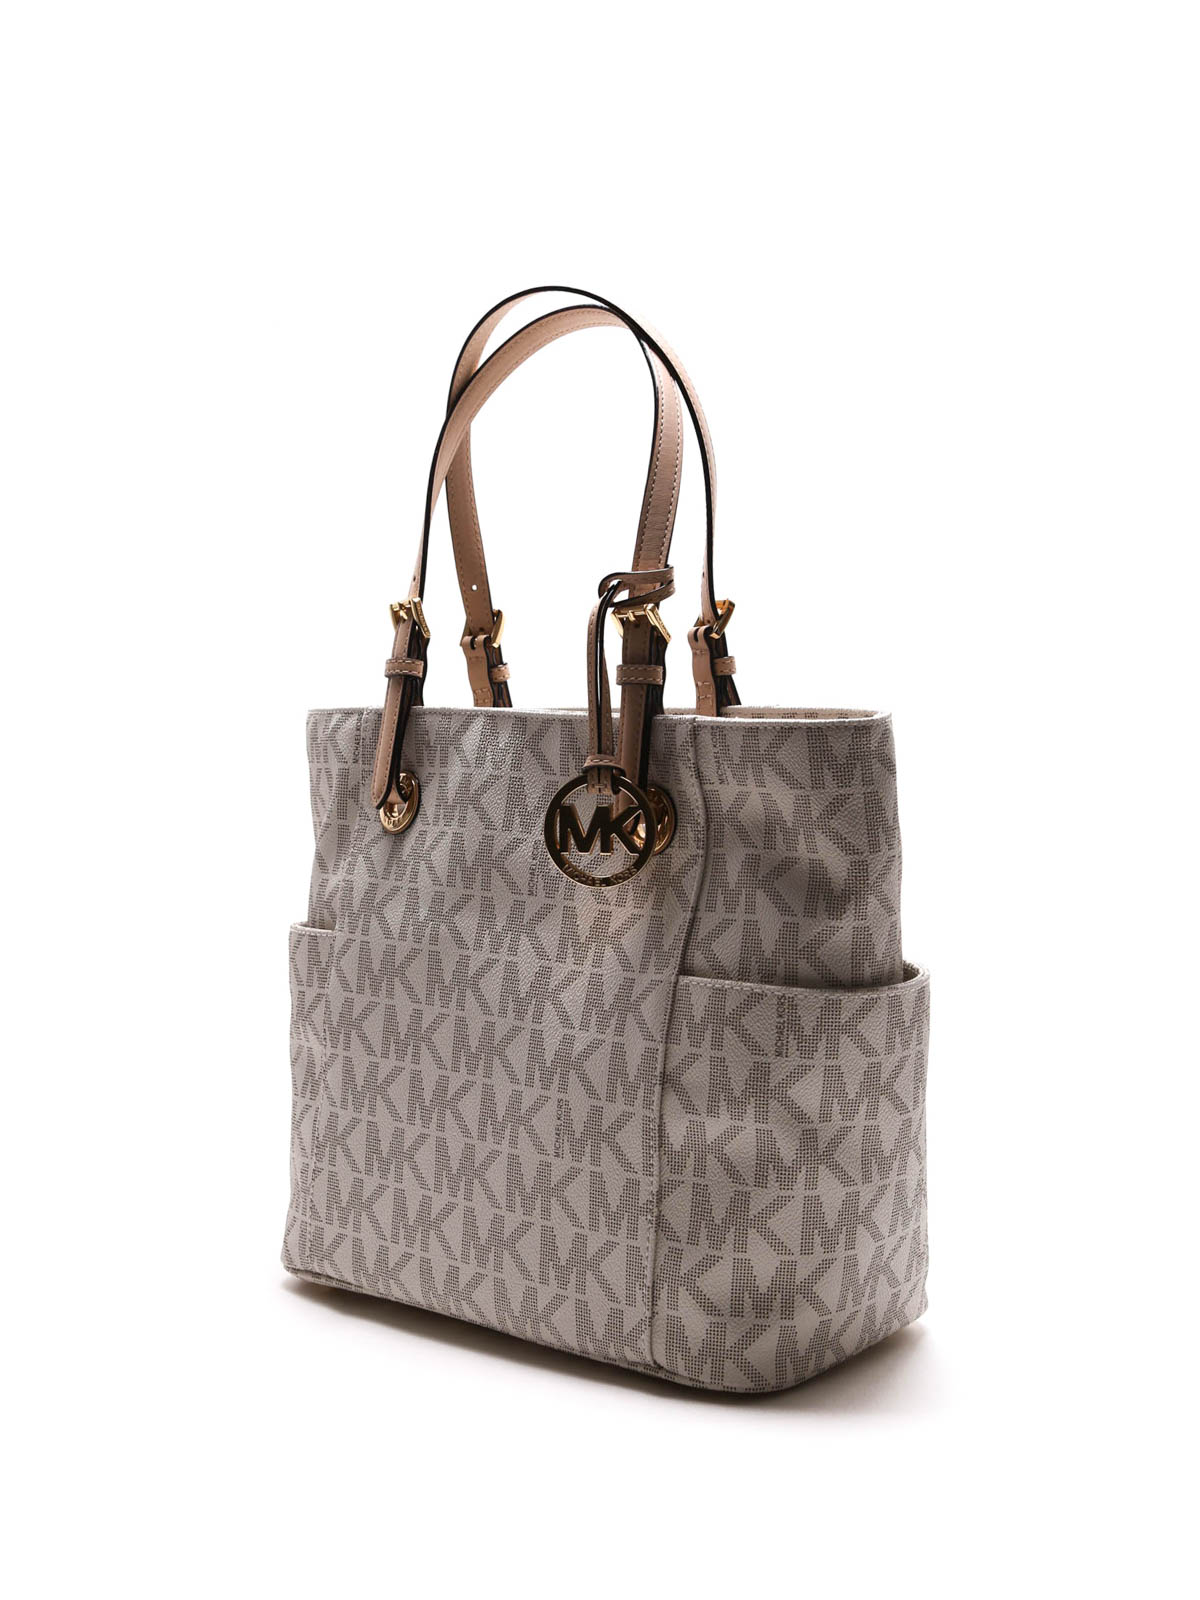 Michael Kors Purse Signature Handbag Shoulder Bag | eBay